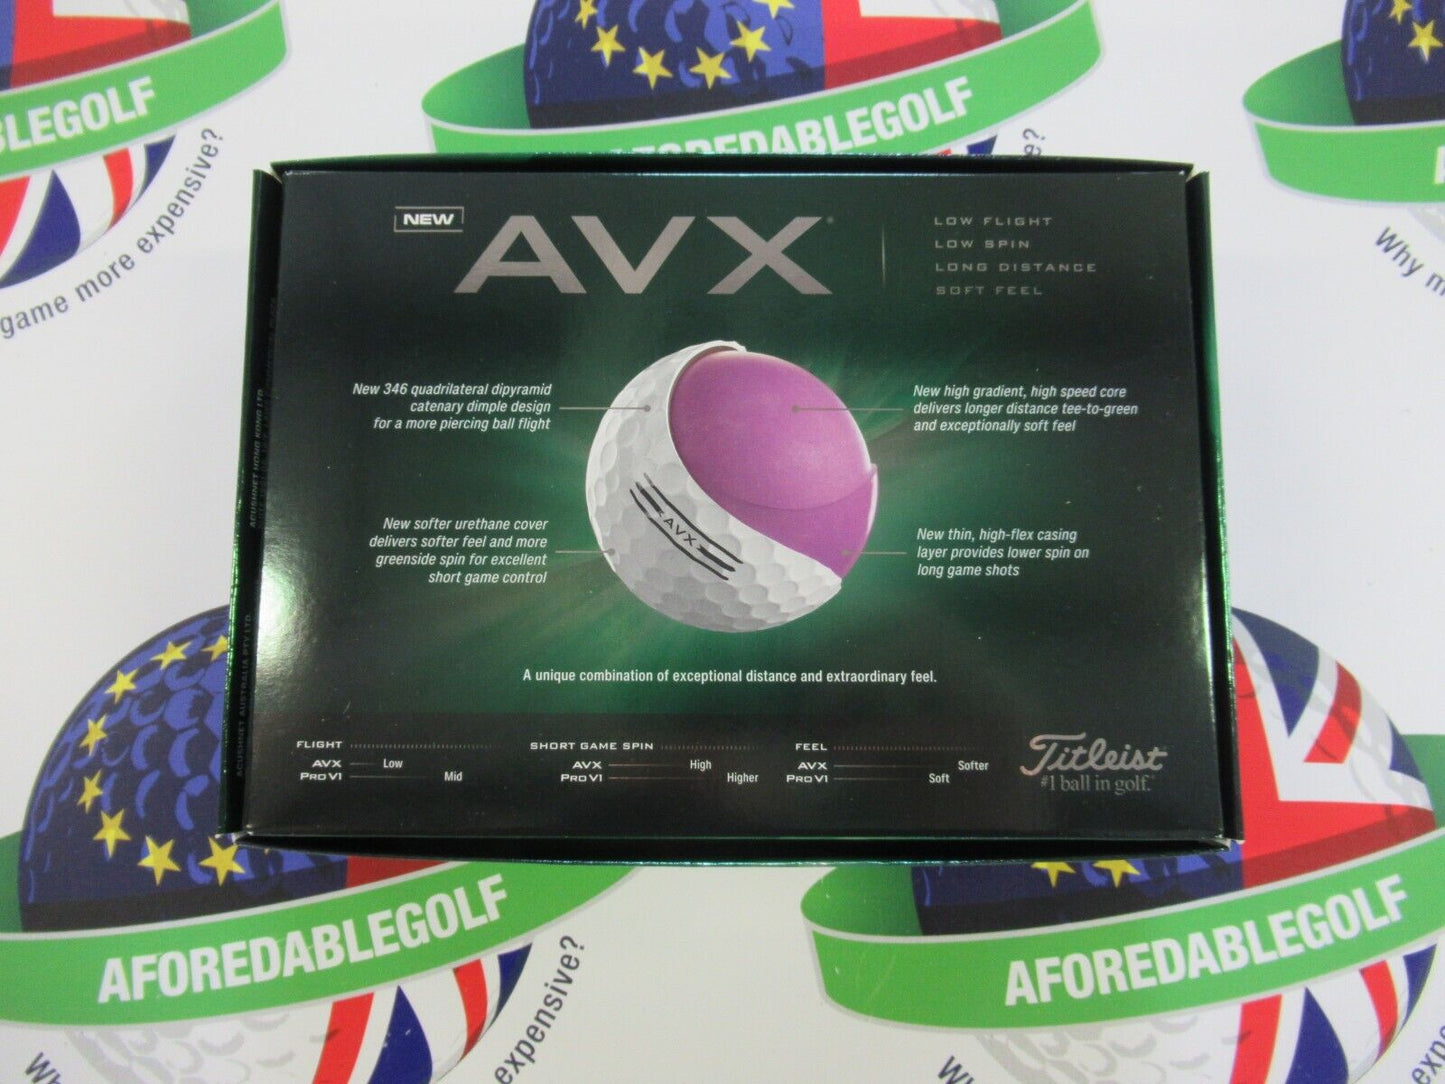 new 1 dozen 12 titleist AVX golf balls